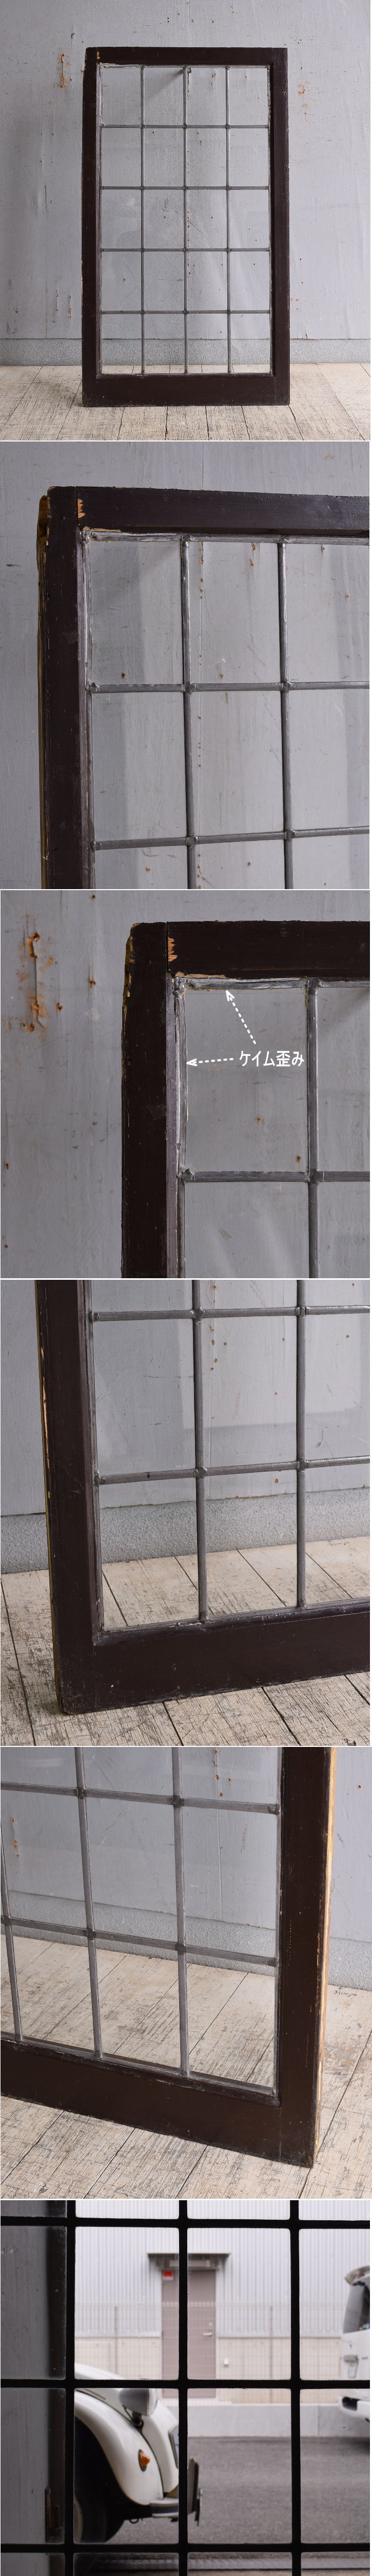 イギリス アンティーク 窓 無色透明 9816